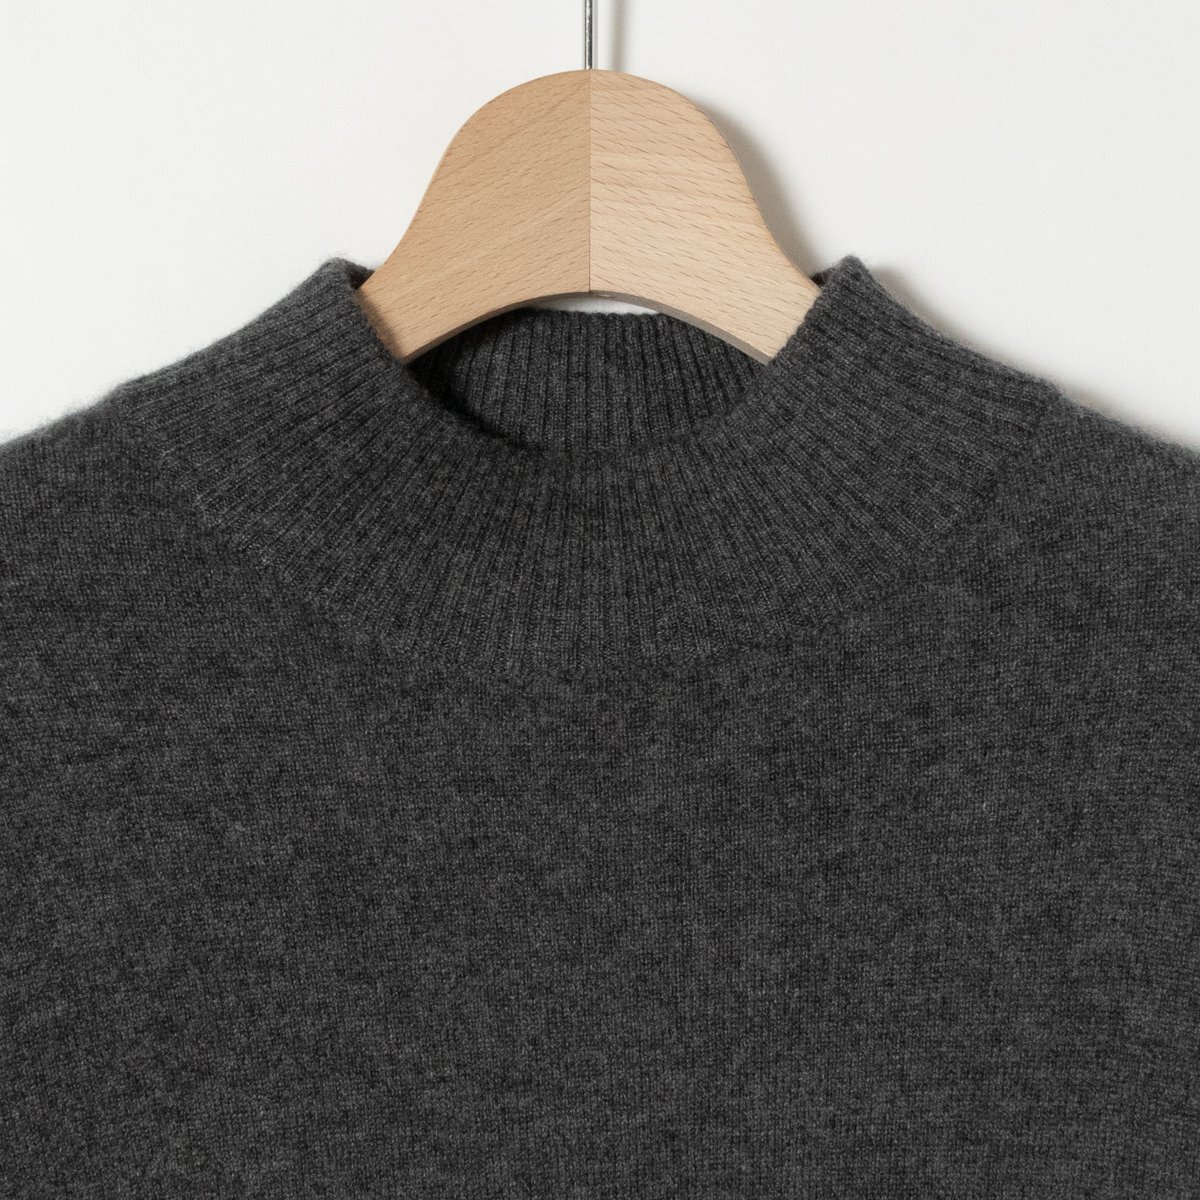 ALPHA Alpha mok шея вязаный кашемир свитер угольно-серый M размер женский кашемир 100% одноцветный простой надеты маваси осень-зима 